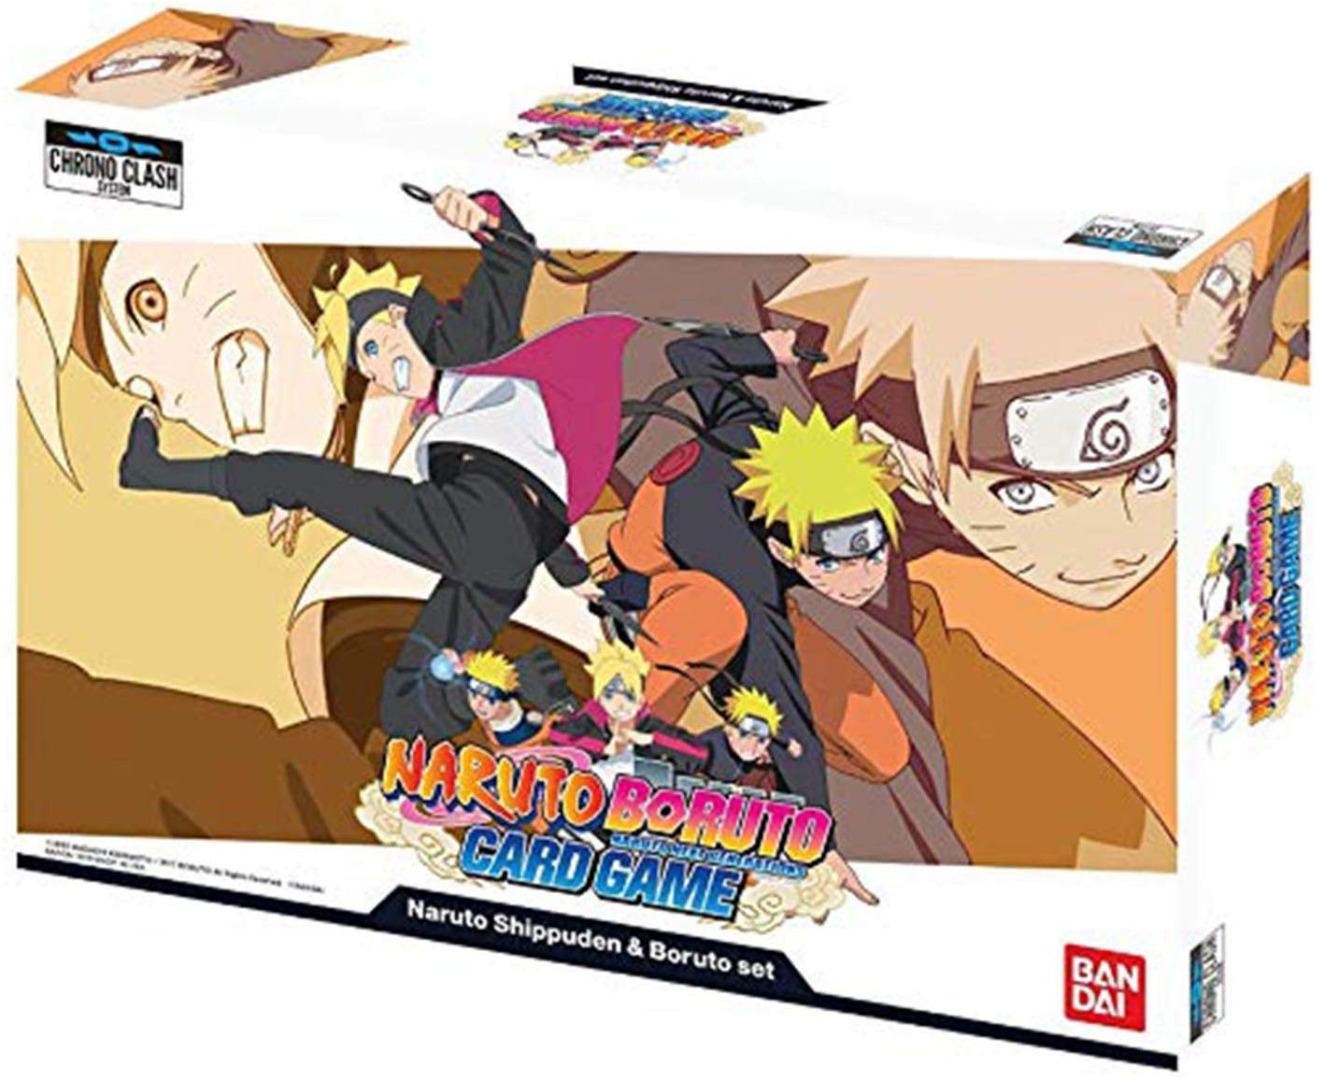 Naruto Boruto Card Game: Naruto Shippuden & Boruto Set English